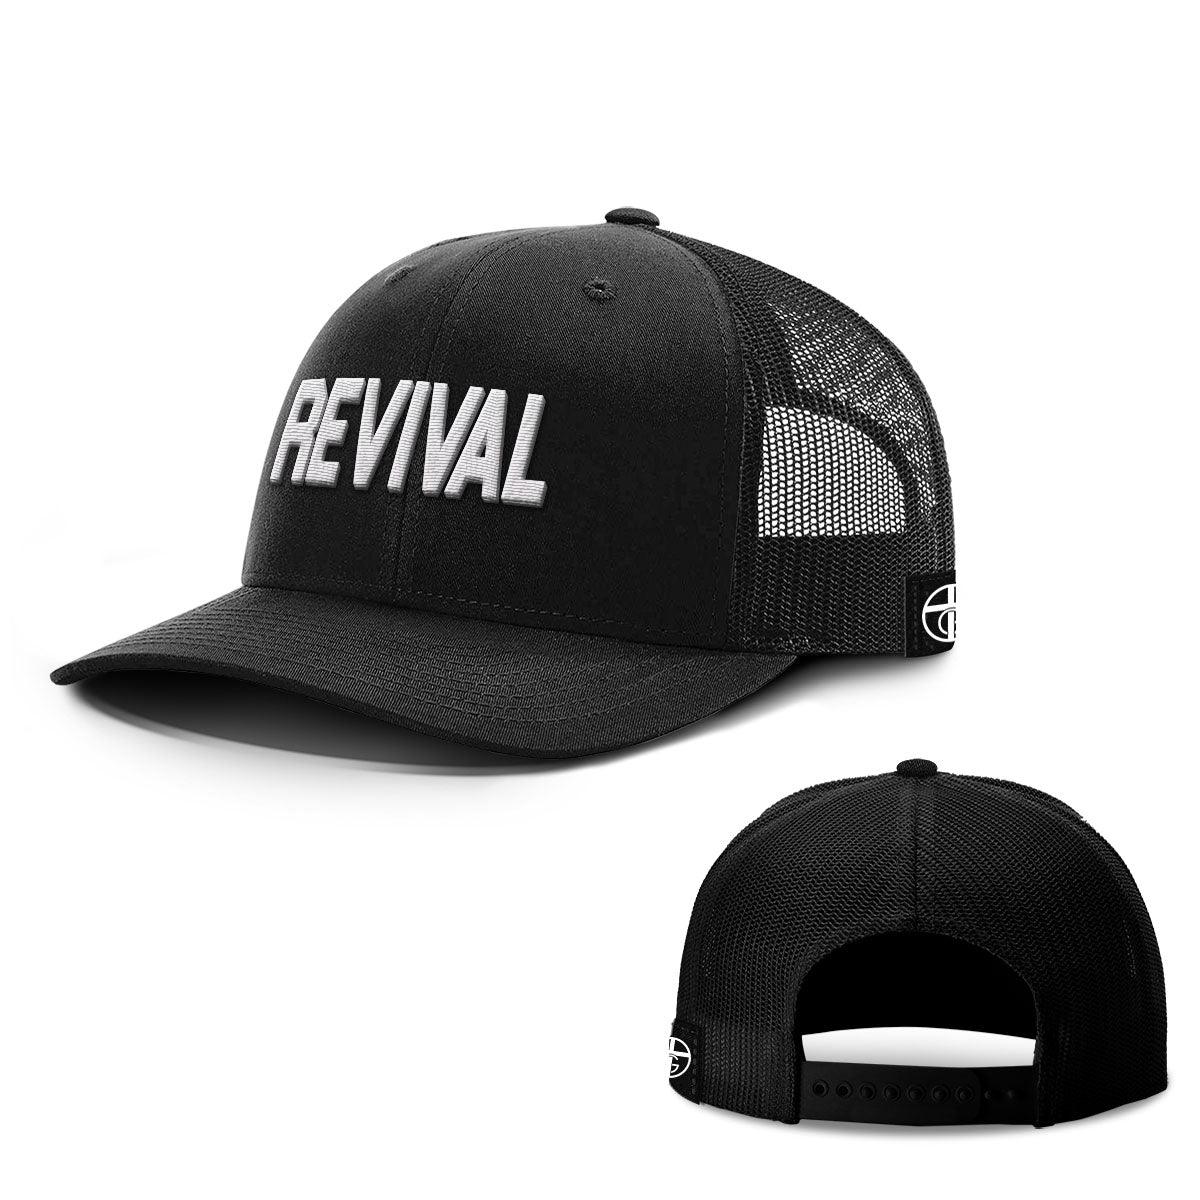 Revival Hats